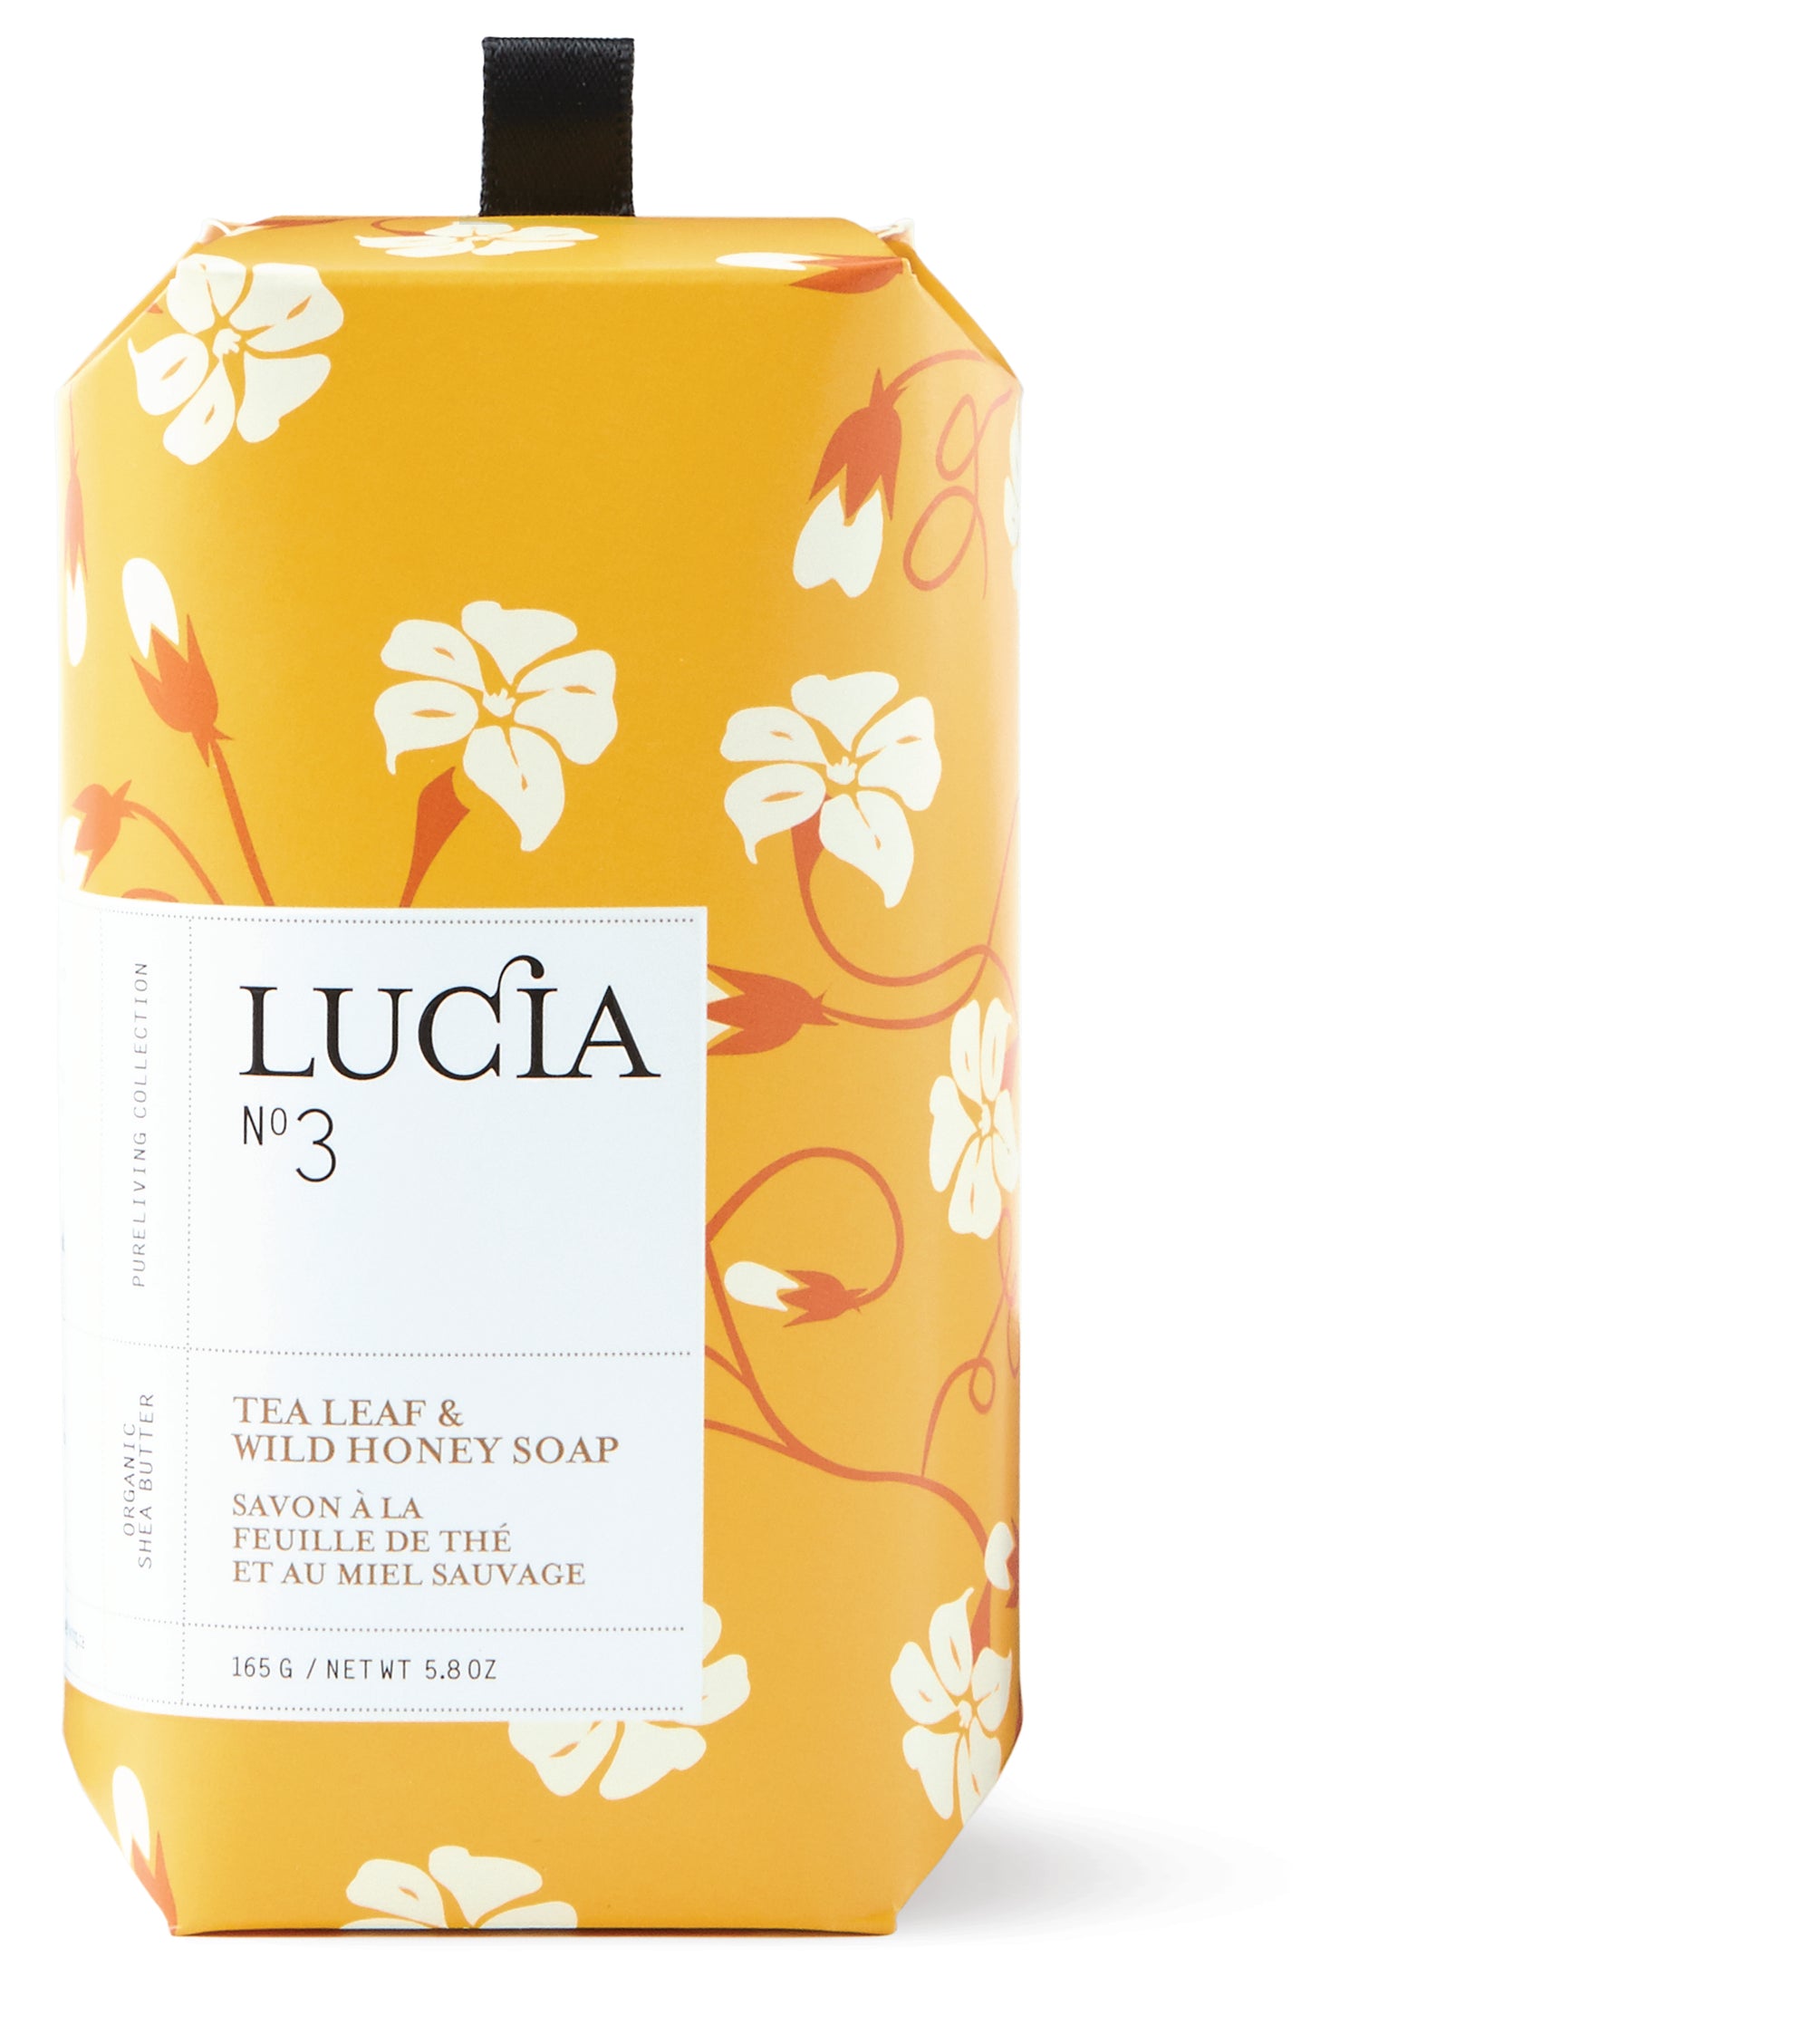 Lucia - No.3 Tea Leaf & Wild Honey Bar Soap